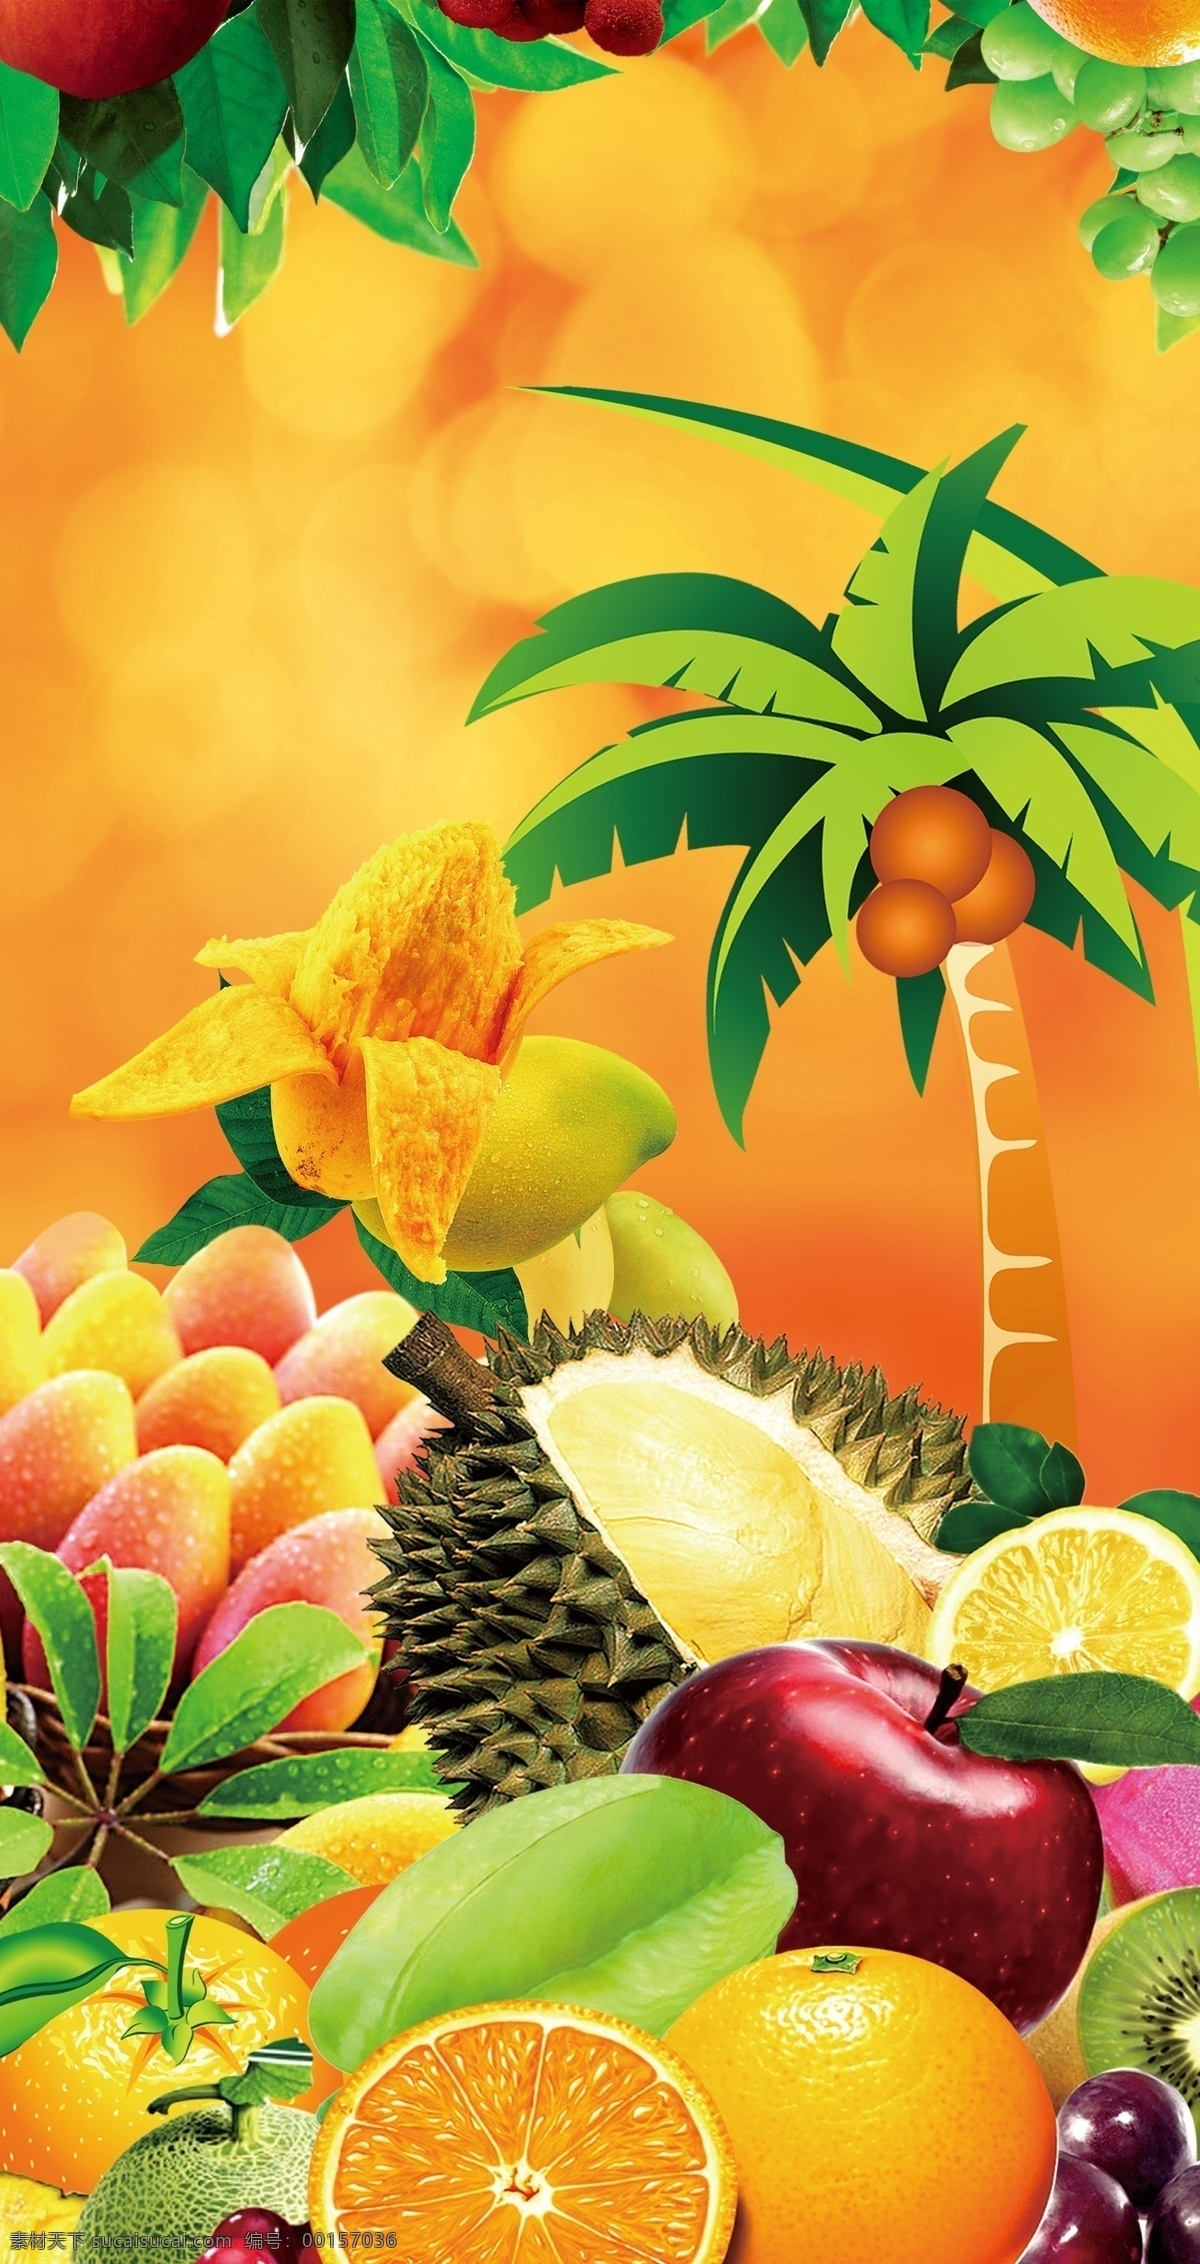 水果批发 新鲜水果 柠檬 橙子 柚子 苹果 椰子